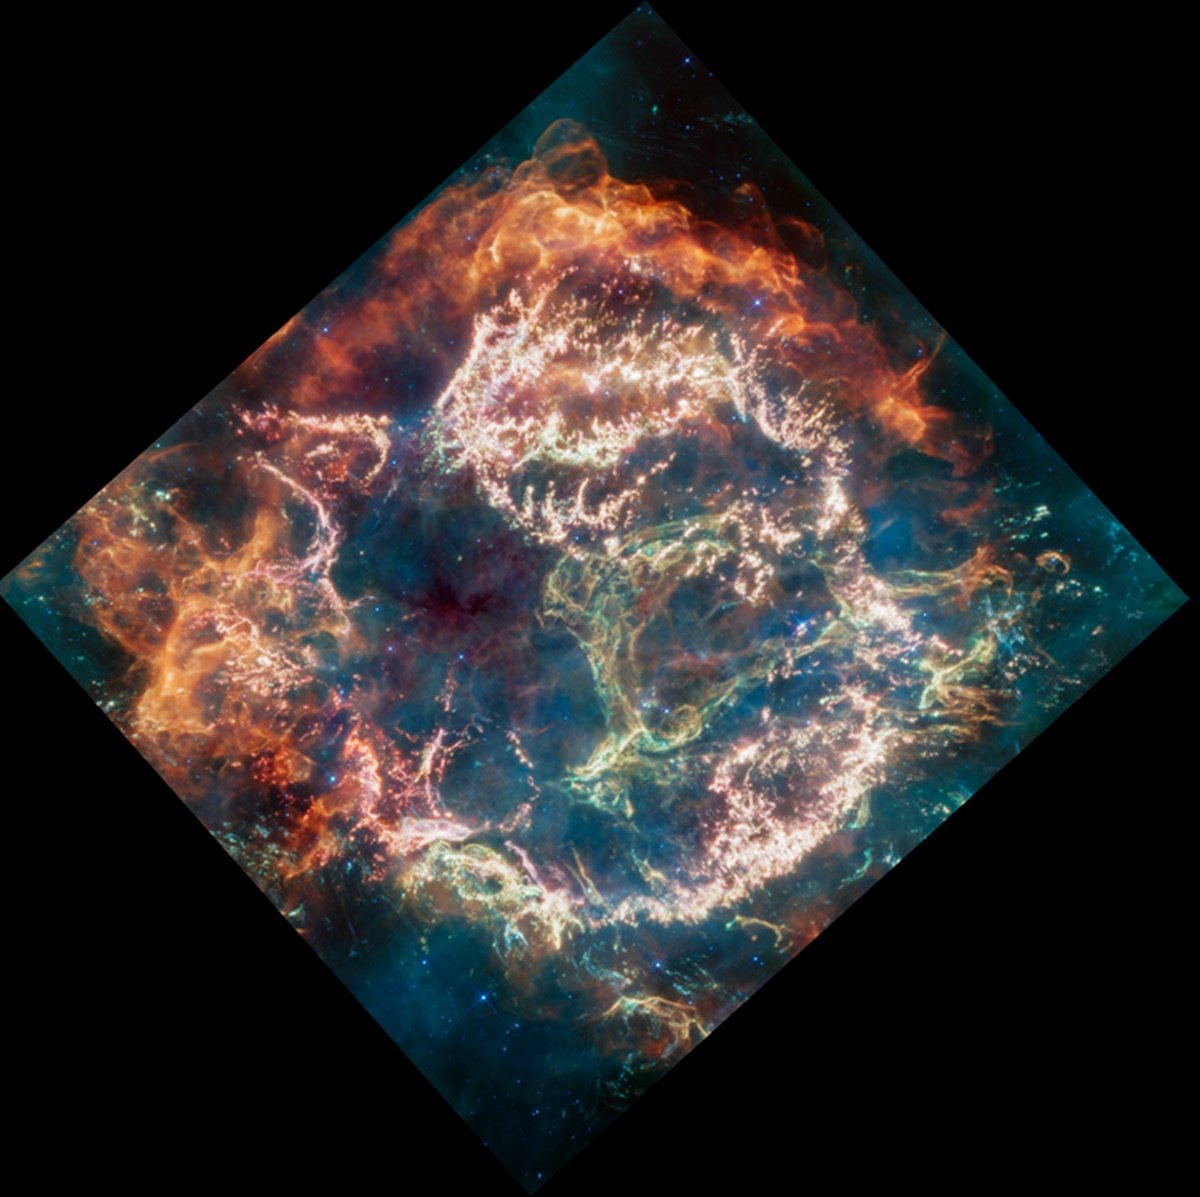 Remanescente de supernova Cassiopeia A (Cas A)